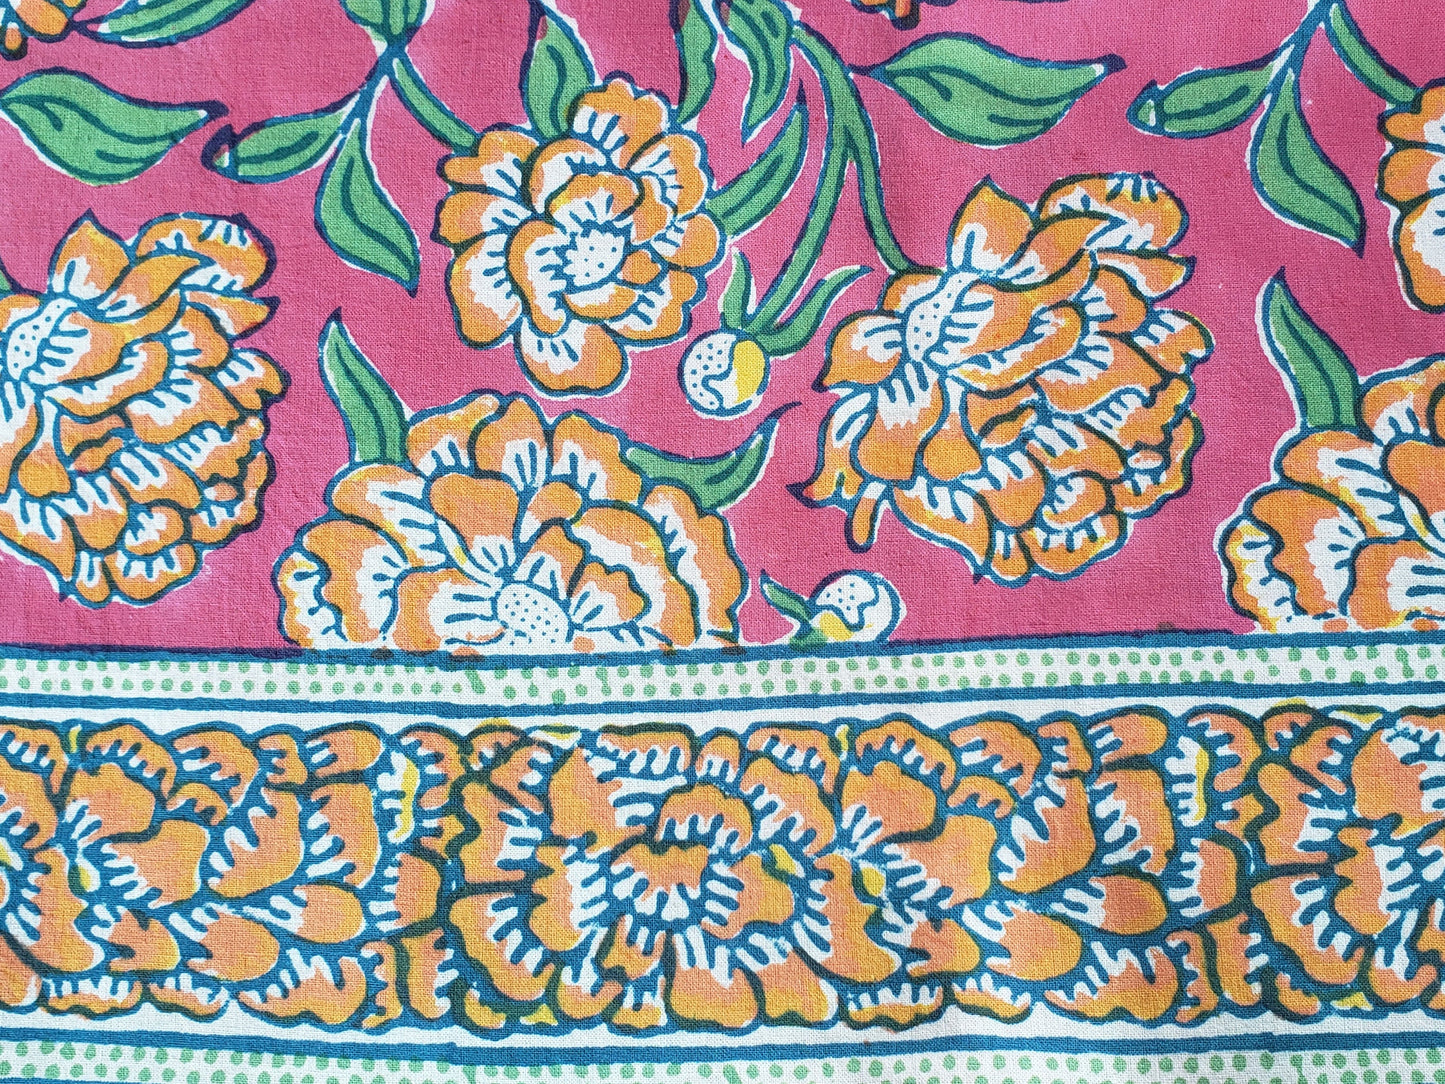 Detalle de sobrecama 100% algodón estampado a mano, base rosa con flores naranjas y tallos verdes. Hecho en la India.